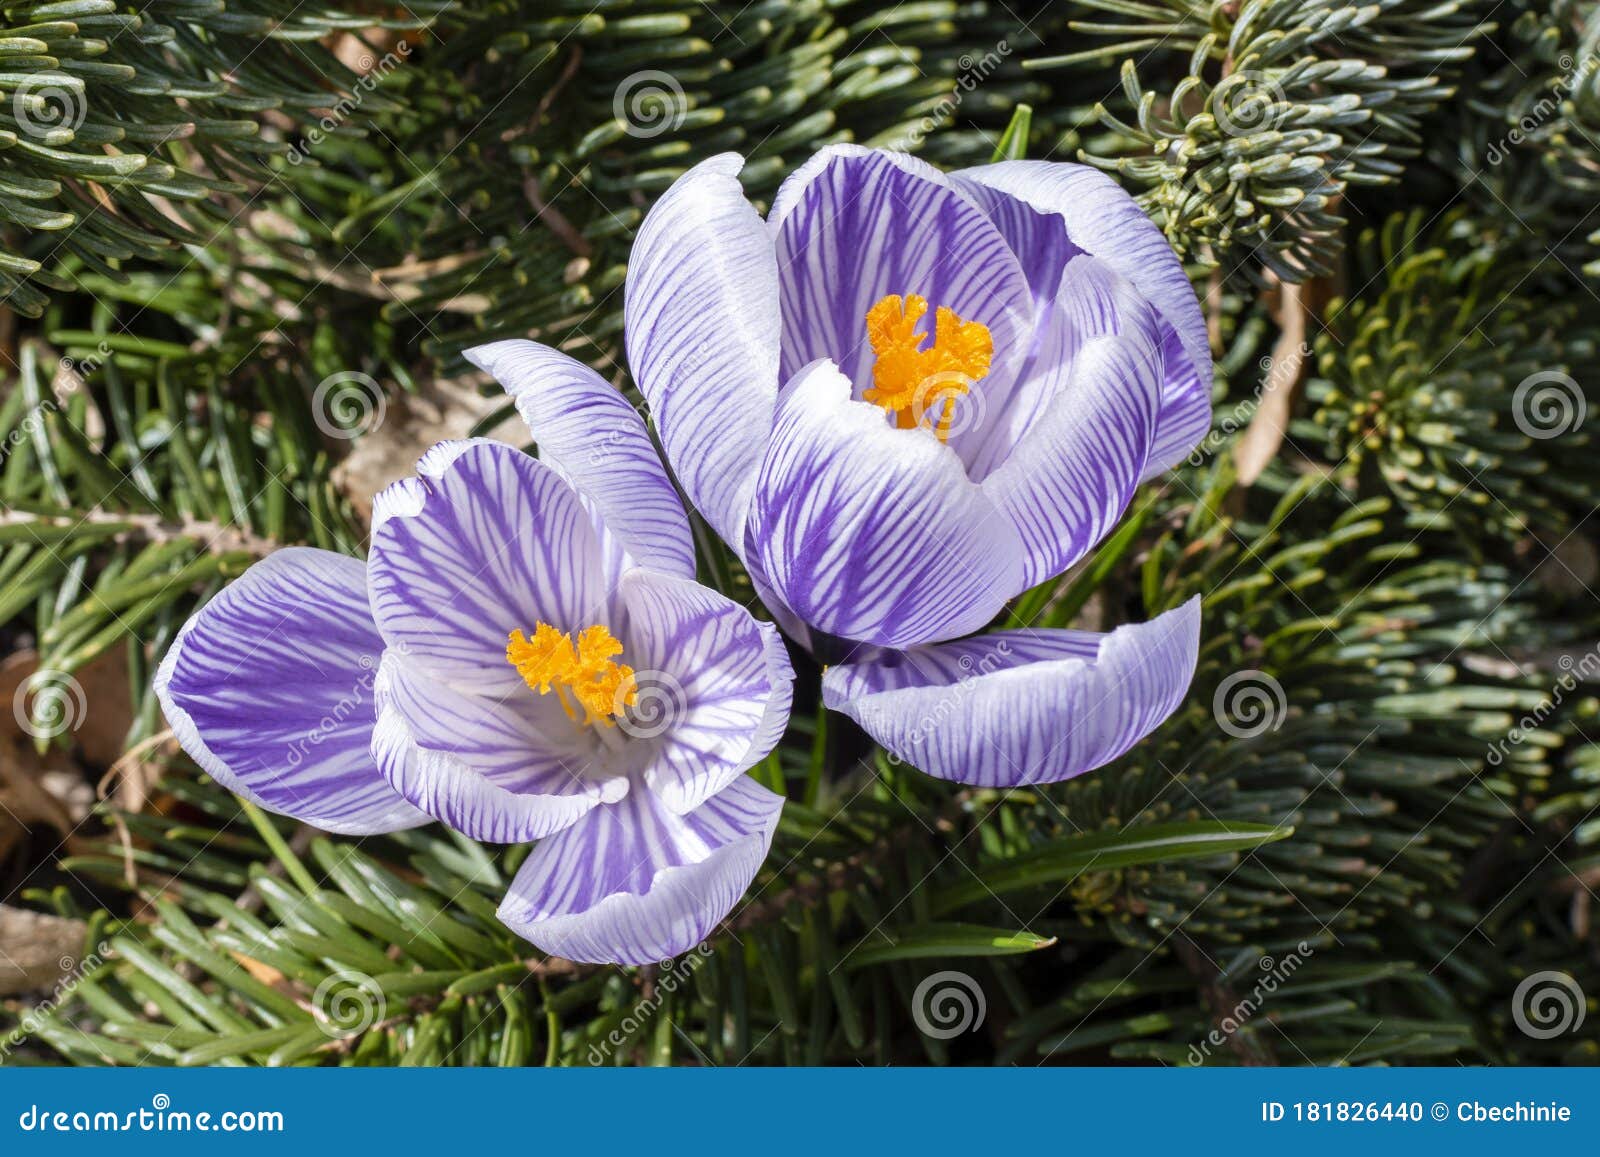 秋水仙花两朵紫白条纹花库存照片 图片包括有室外 草甸 生气勃勃 首先 蓝色 冷杉 背包